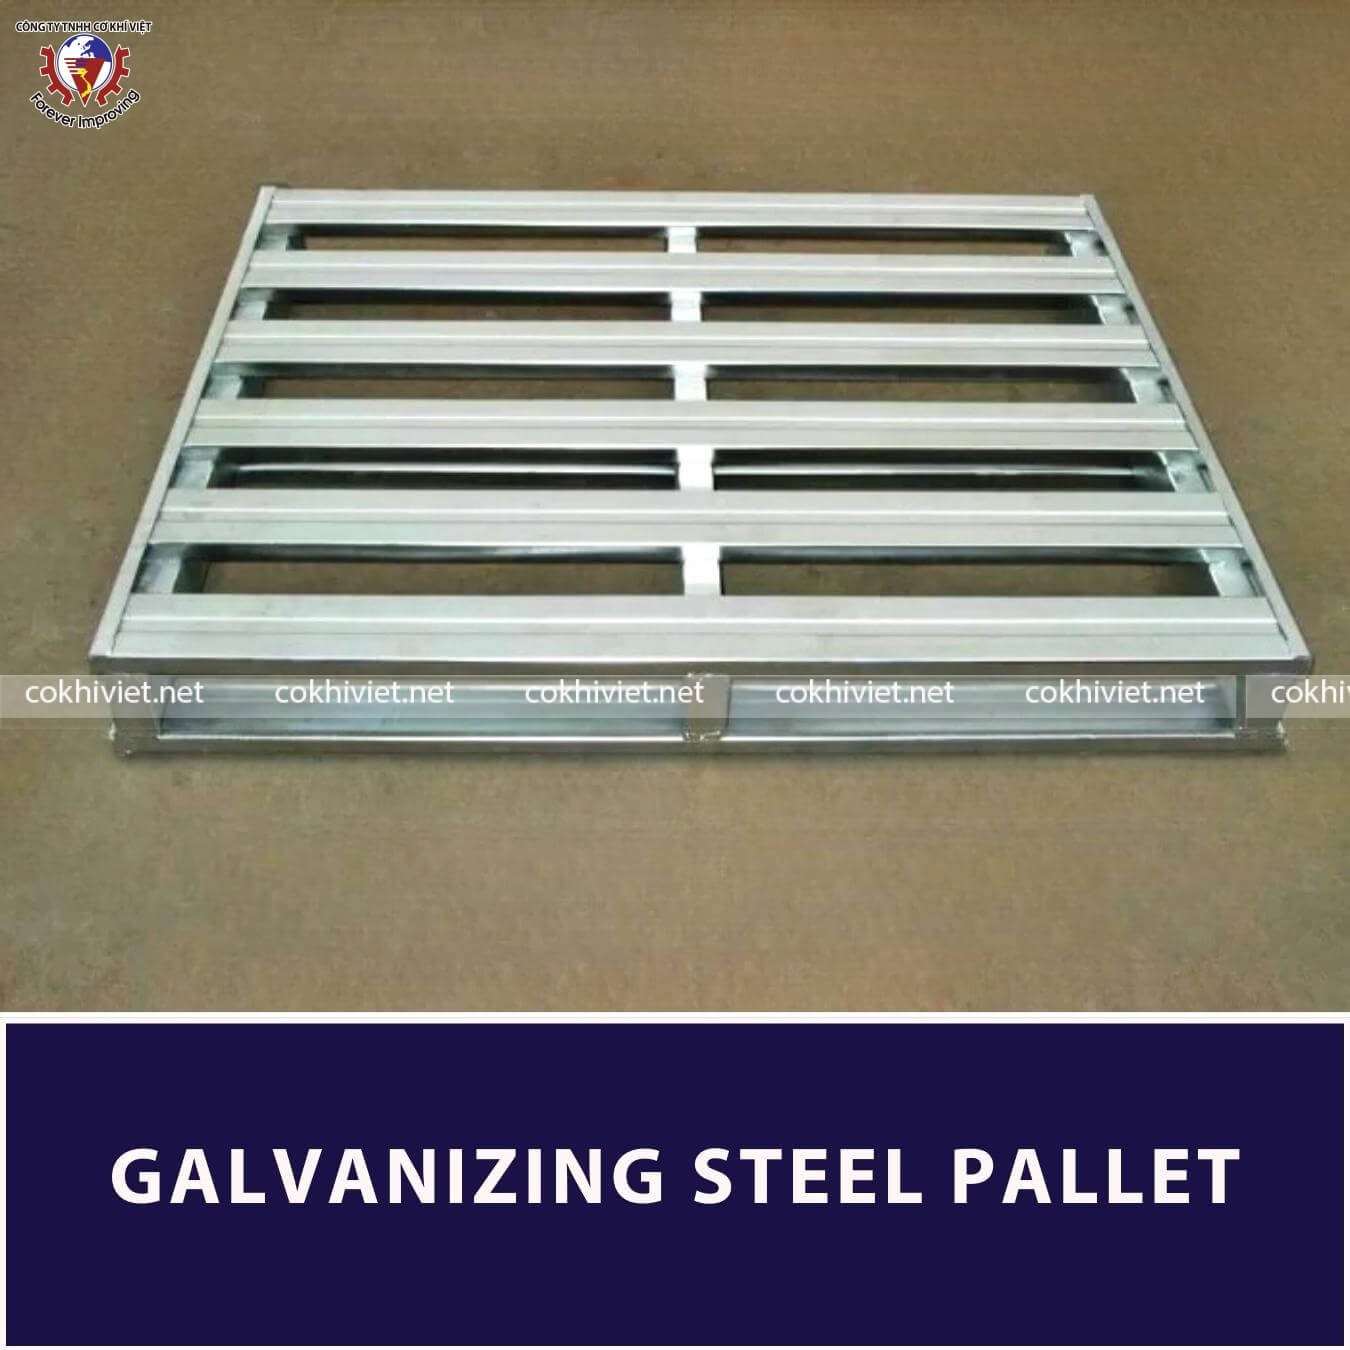 galvanizing steel pallet